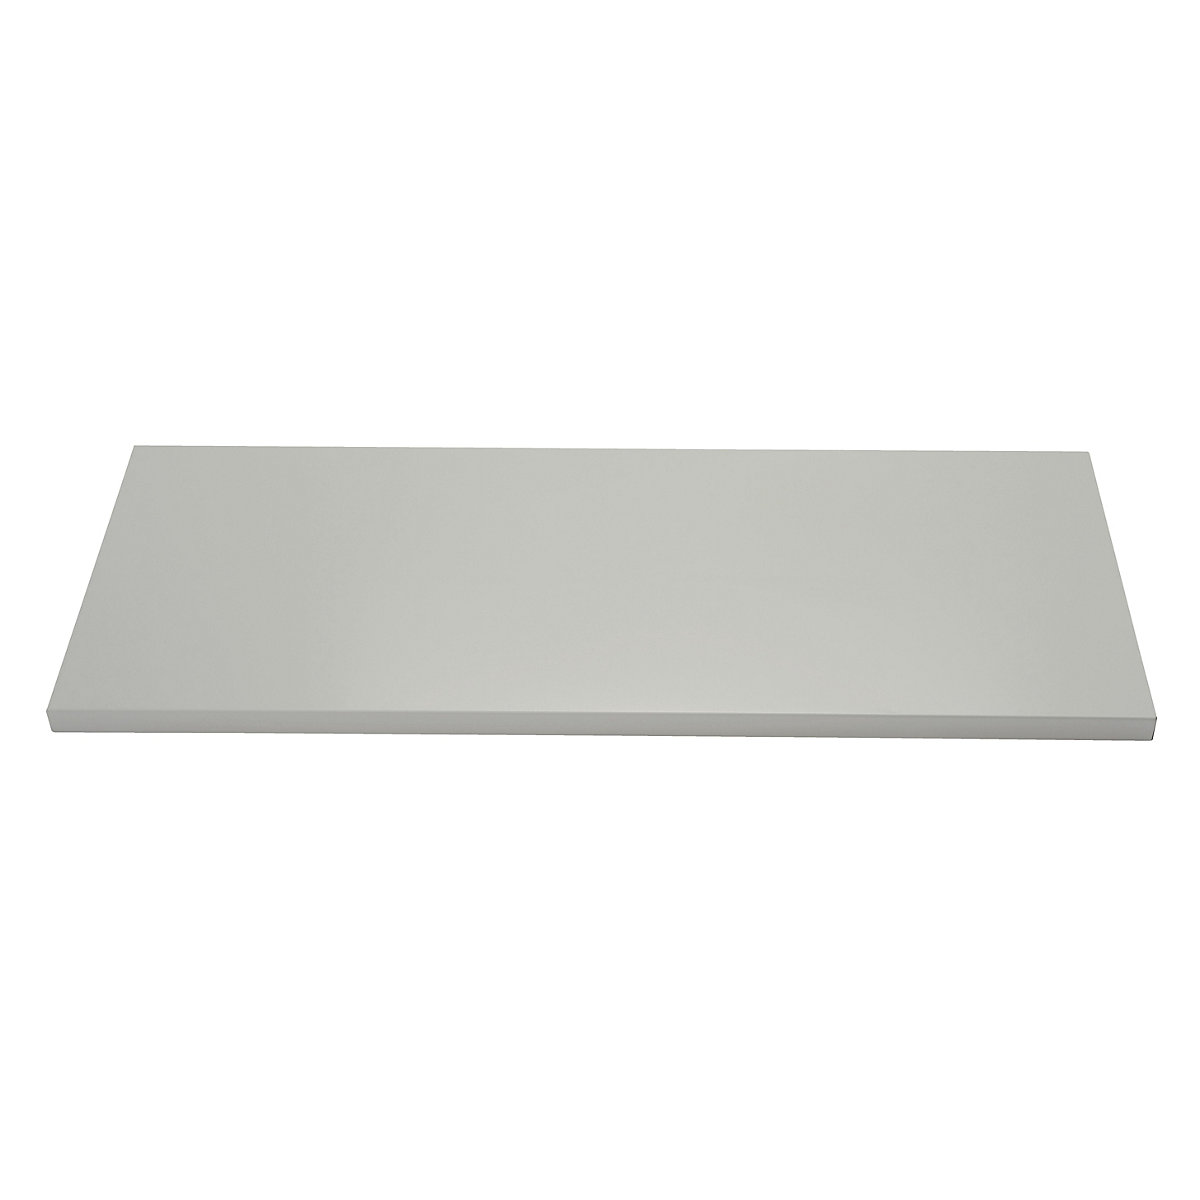 Tablette avec dispositif d'accrochage latéral – BISLEY, pour l x p 914 x 400 mm, gris clair-2